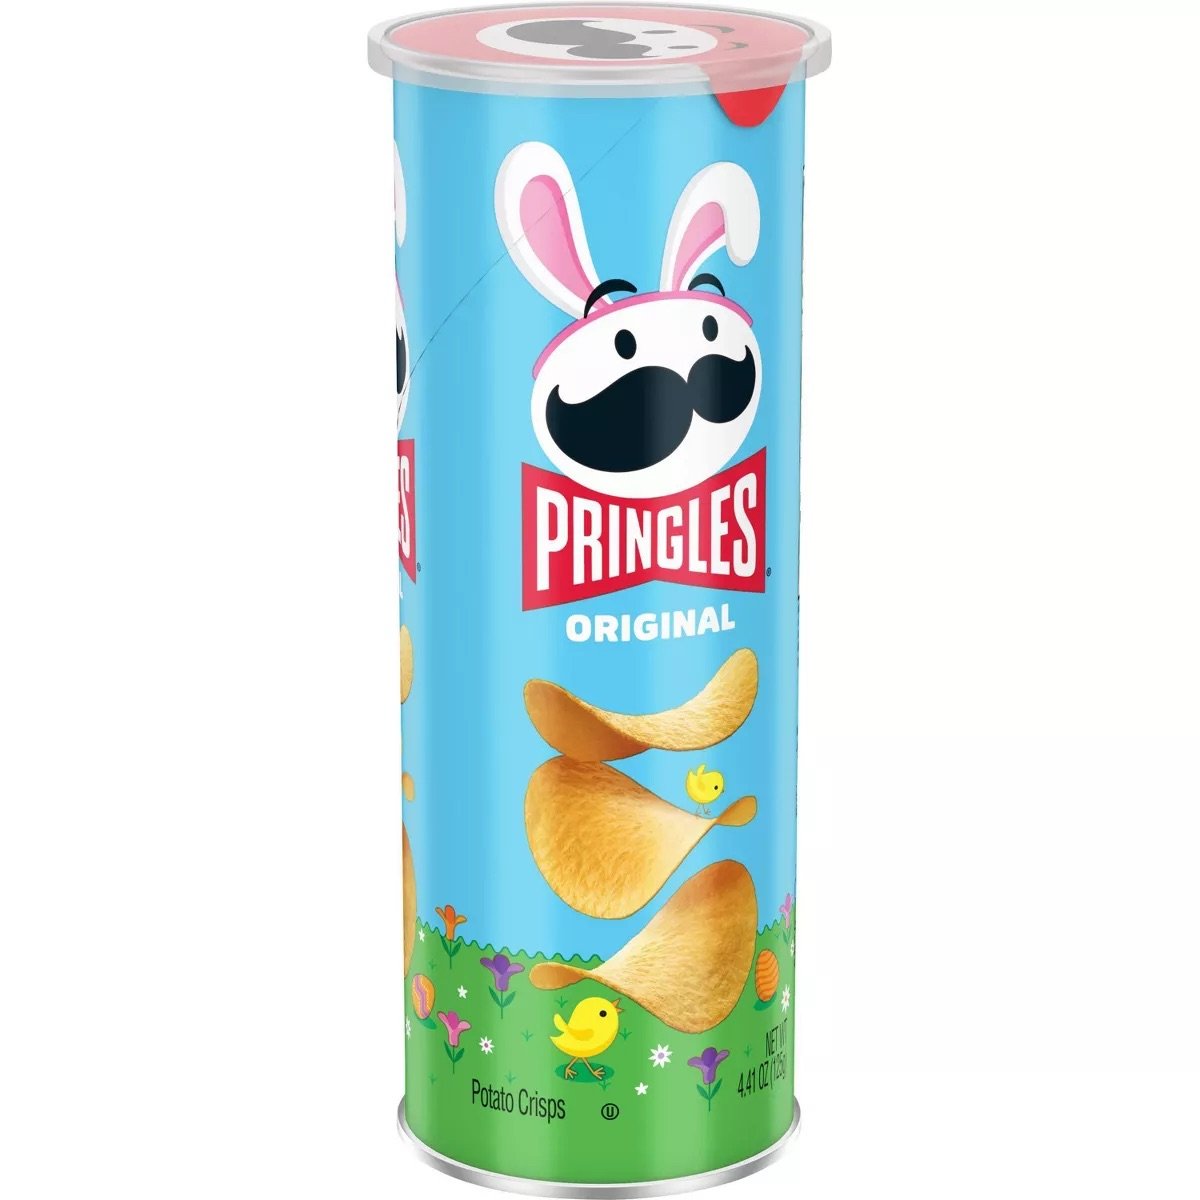 Pringles Original Easter.jpeg